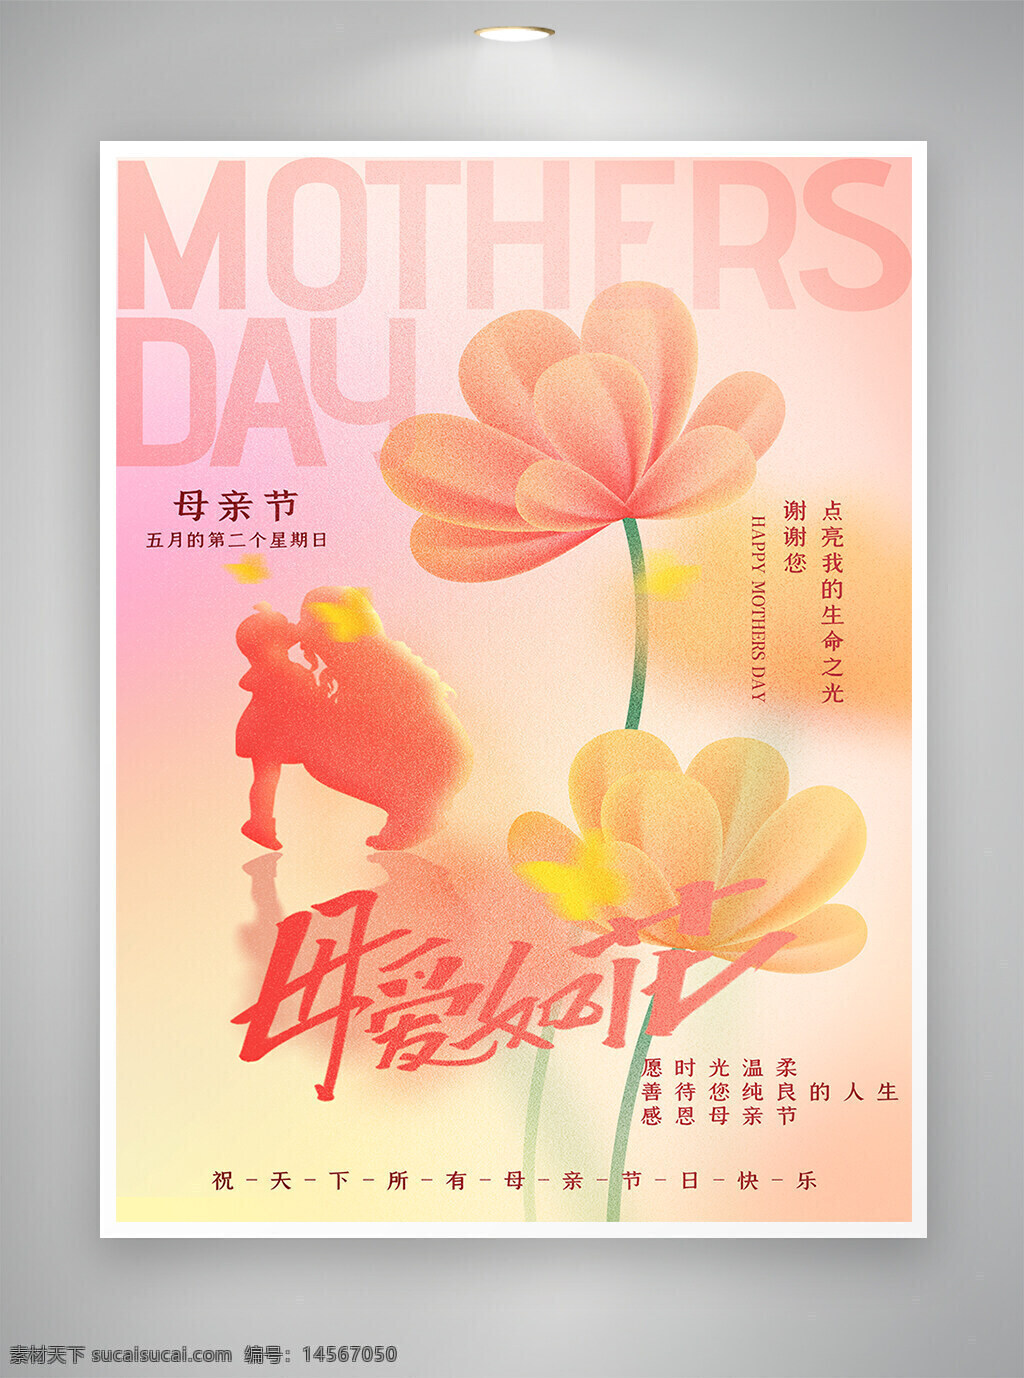 母亲节 母亲节宣传 母亲节海报 节日宣传 节日海报 宣传海报 海报